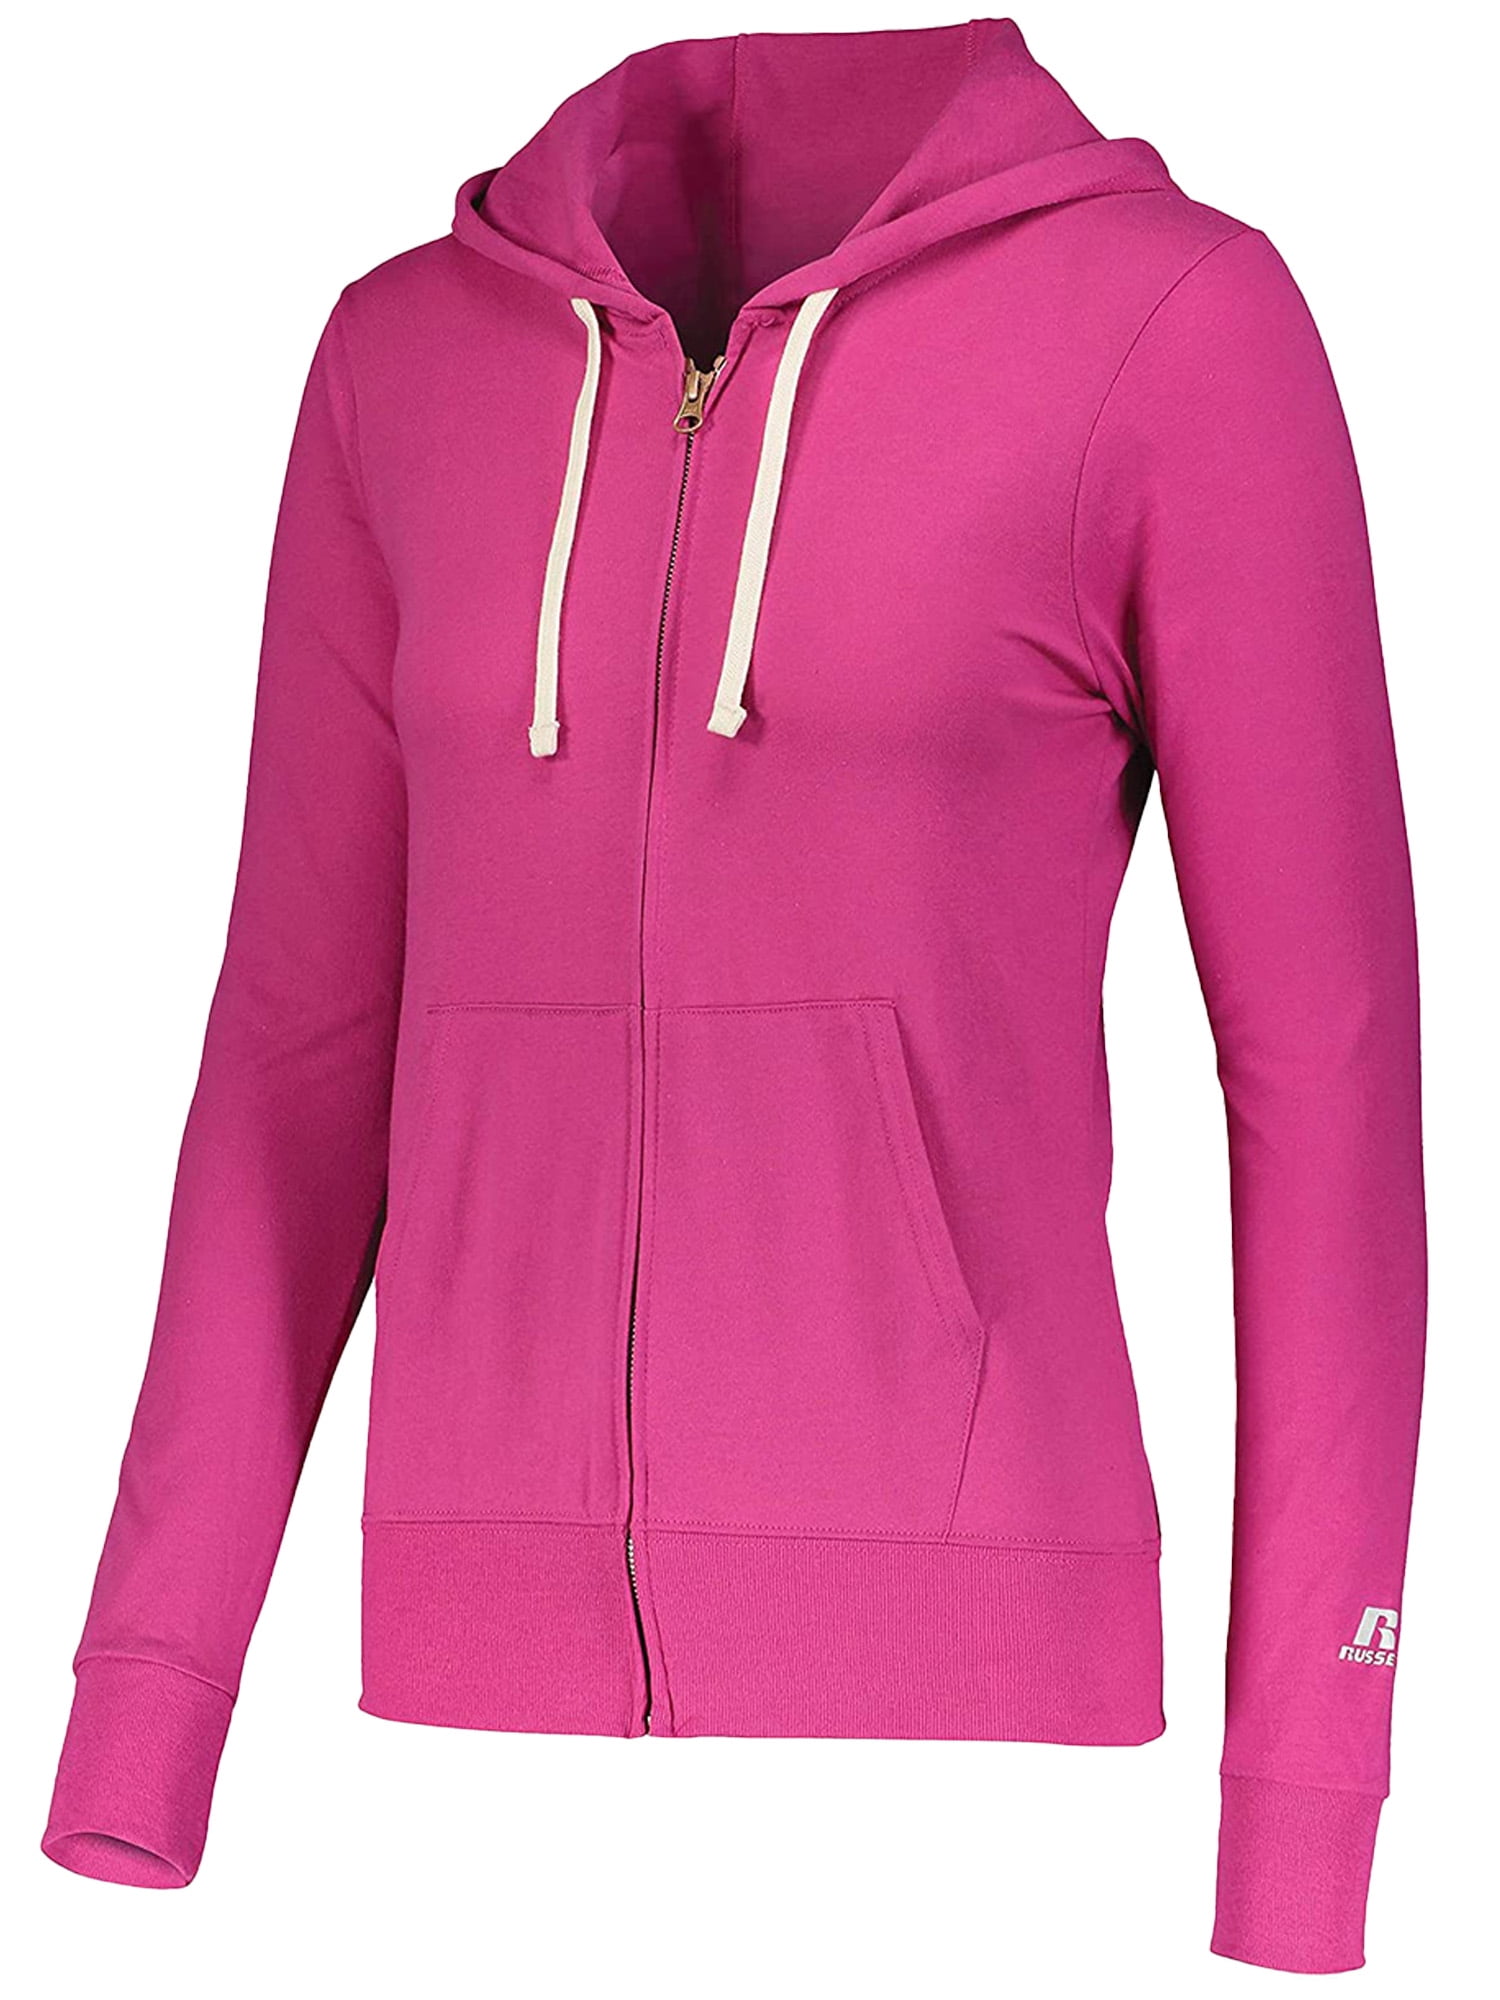 Zip Cardigan Hoodie Sporty Style Sweatshirt Full-zip Hoodie Adjustable Hood